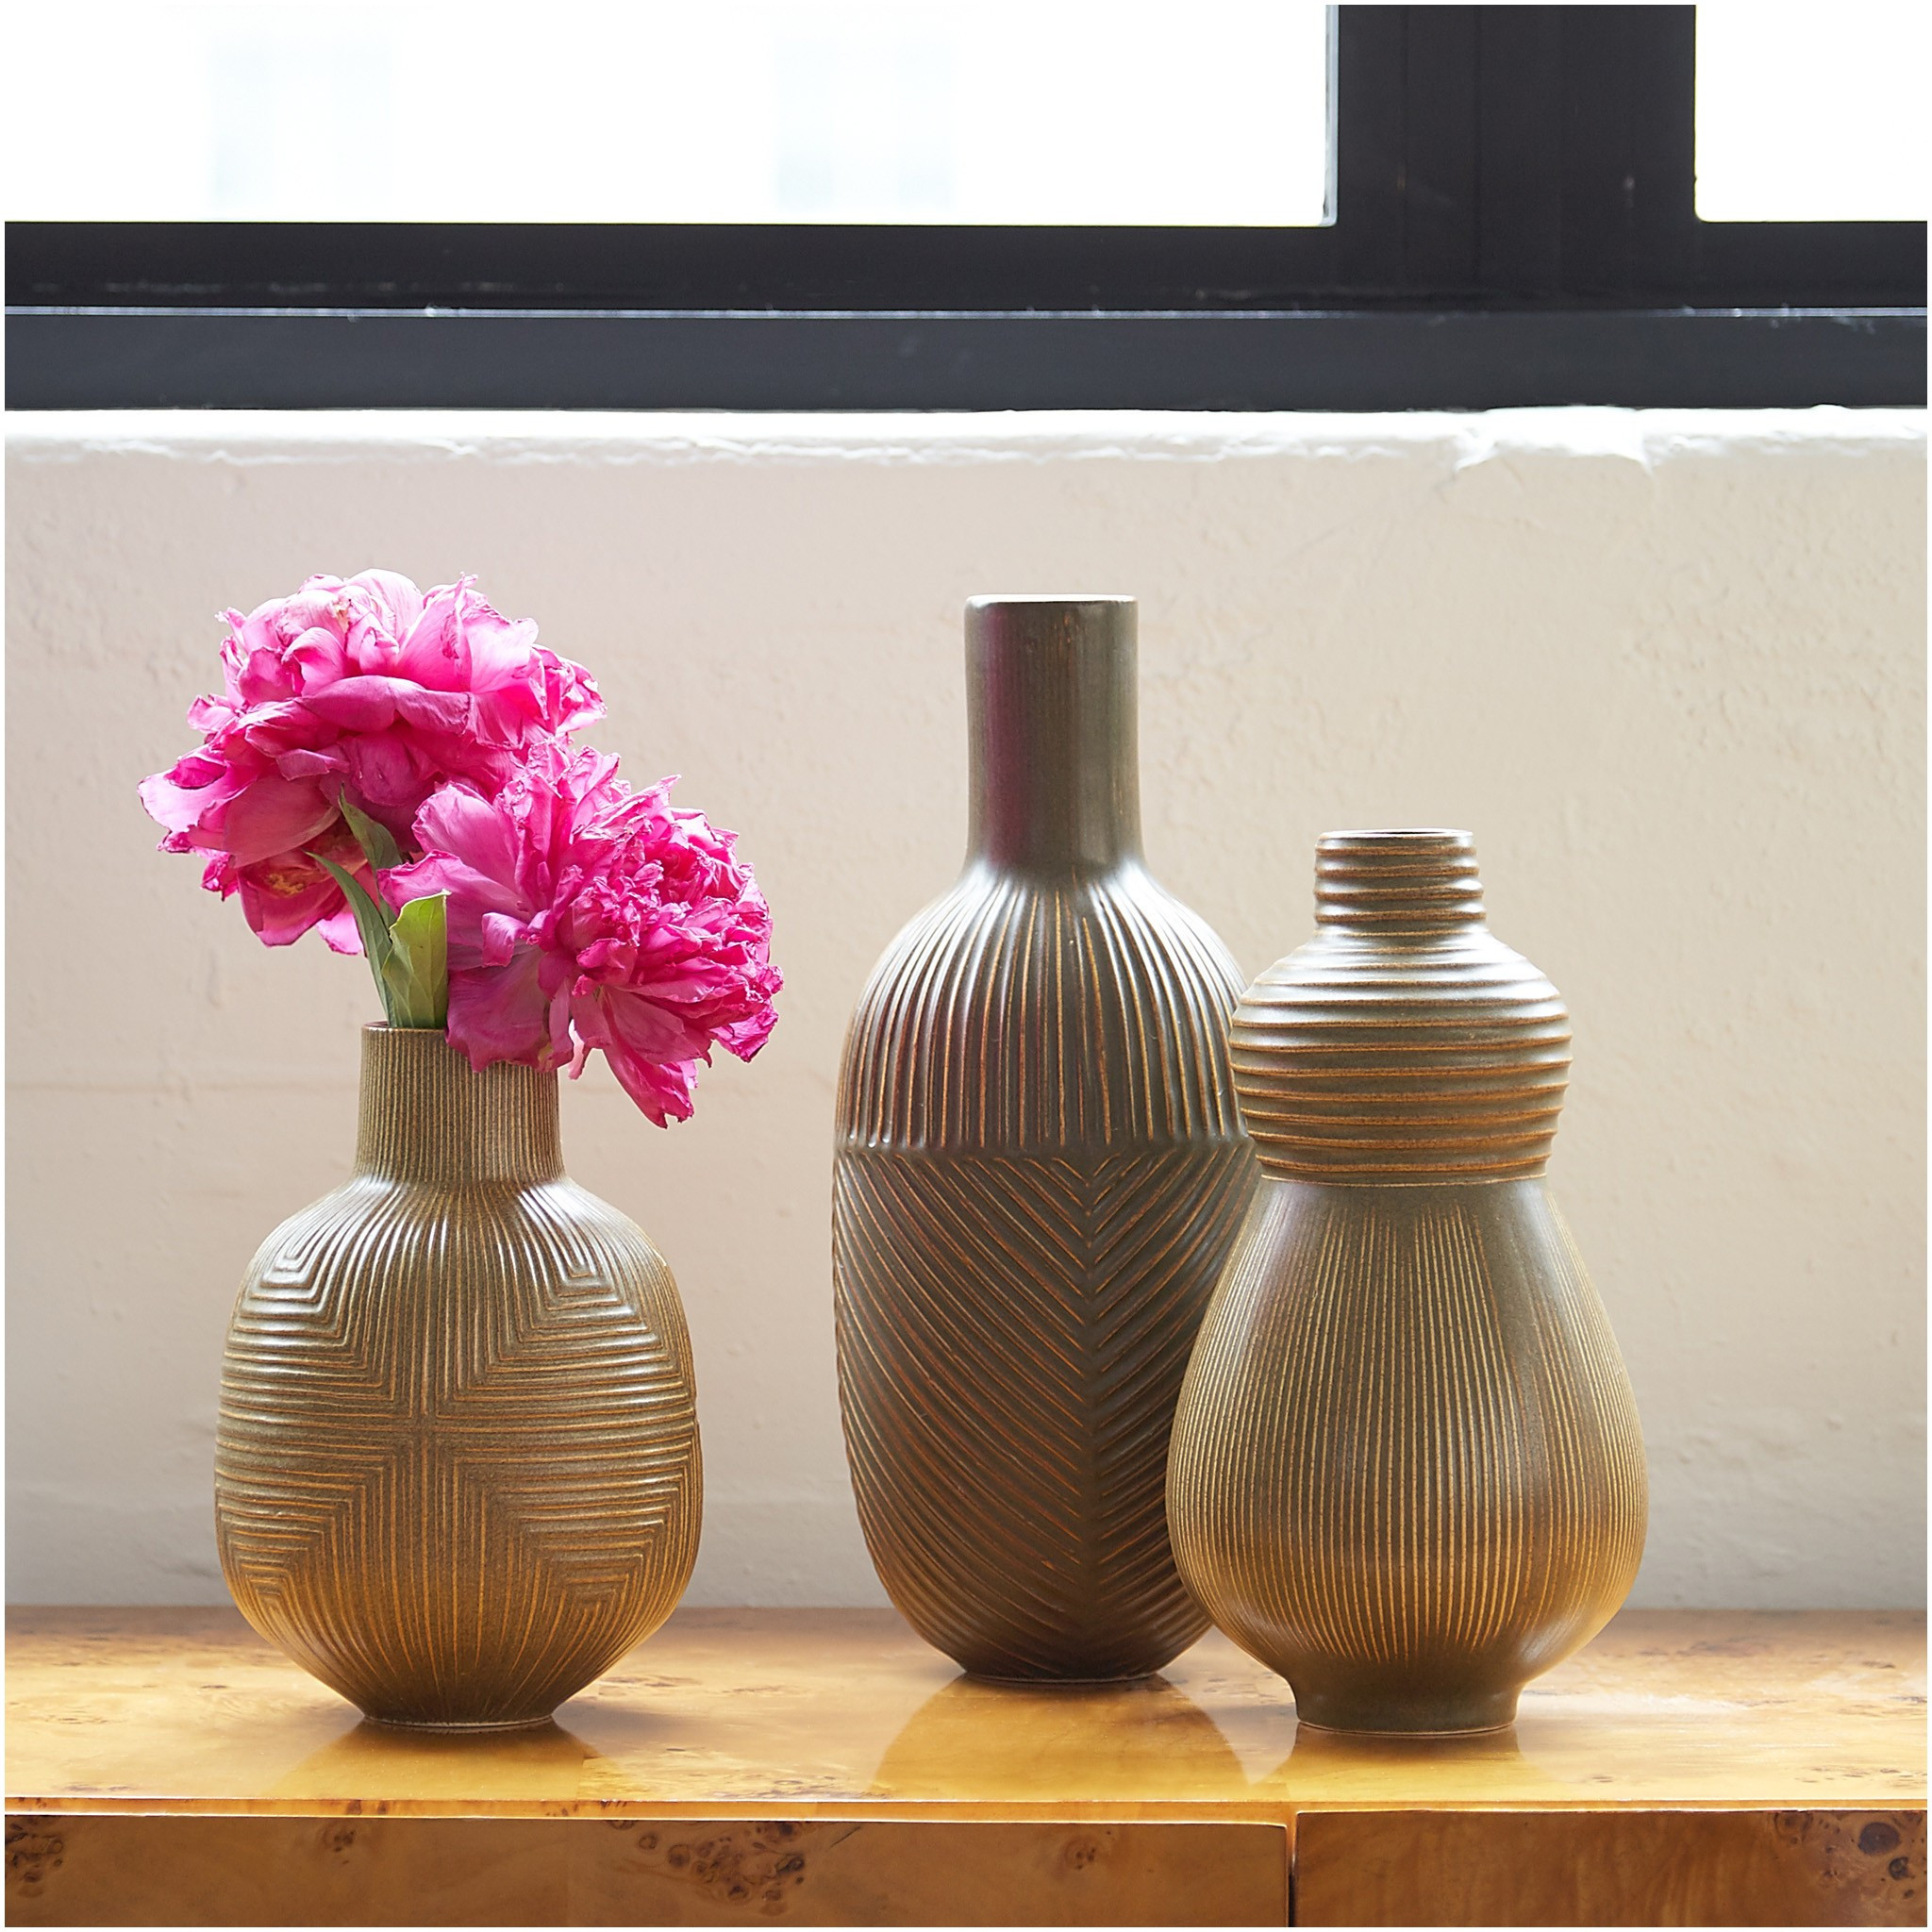 22 Spectacular White Ceramic Floor Vase | Decorative vase Ideas